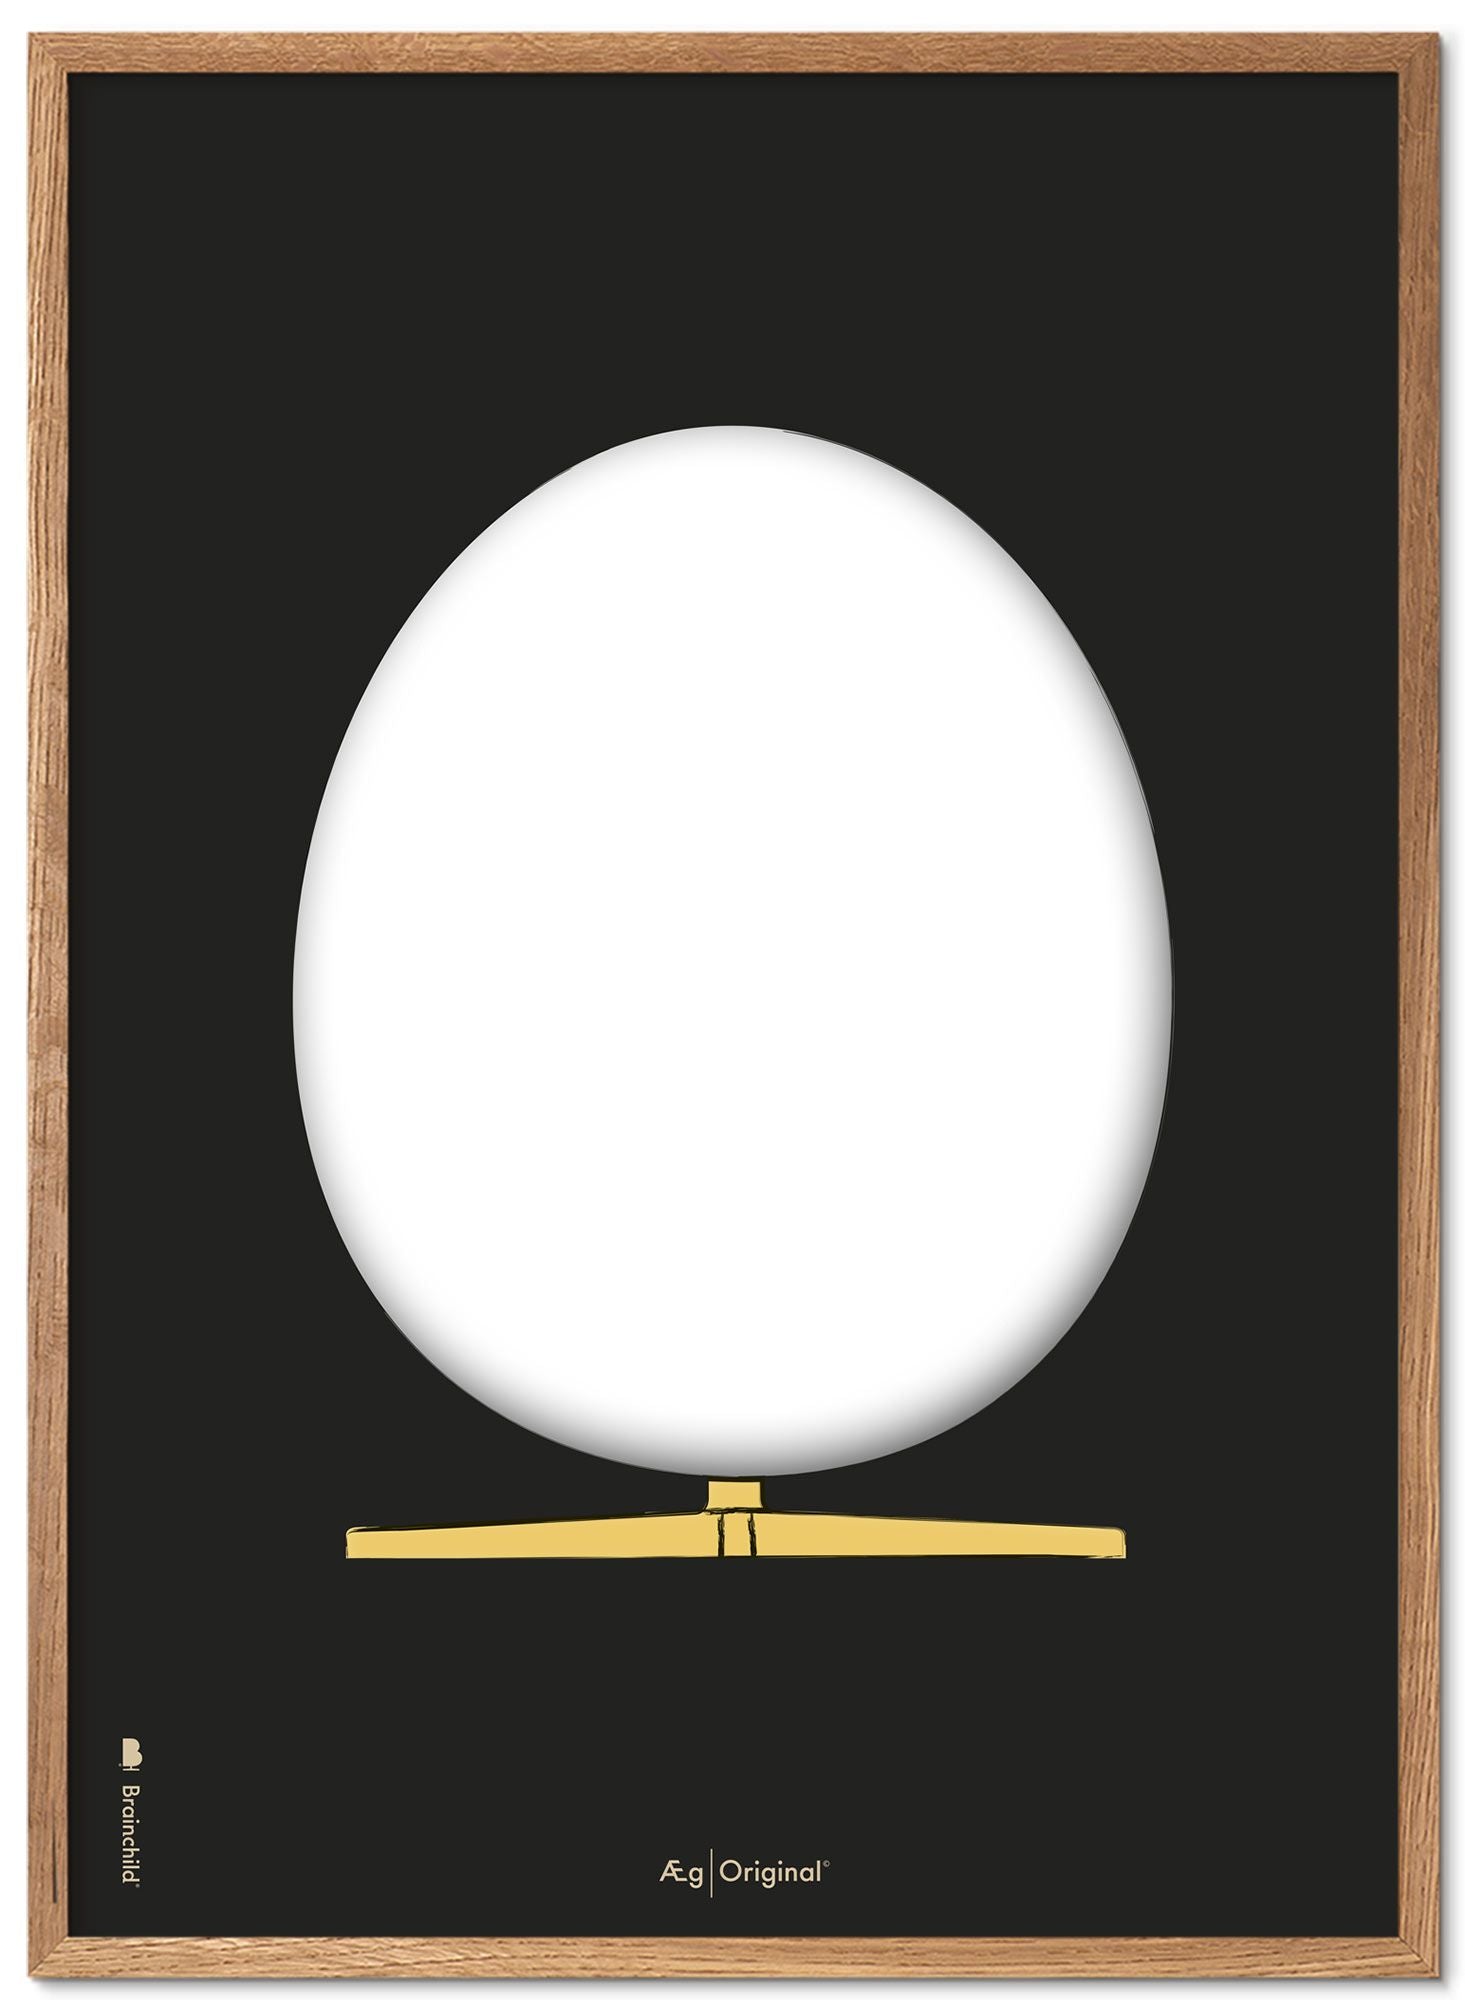 Prepare el marco de póster de boceto de diseño de huevo hecho de madera clara A5, fondo negro